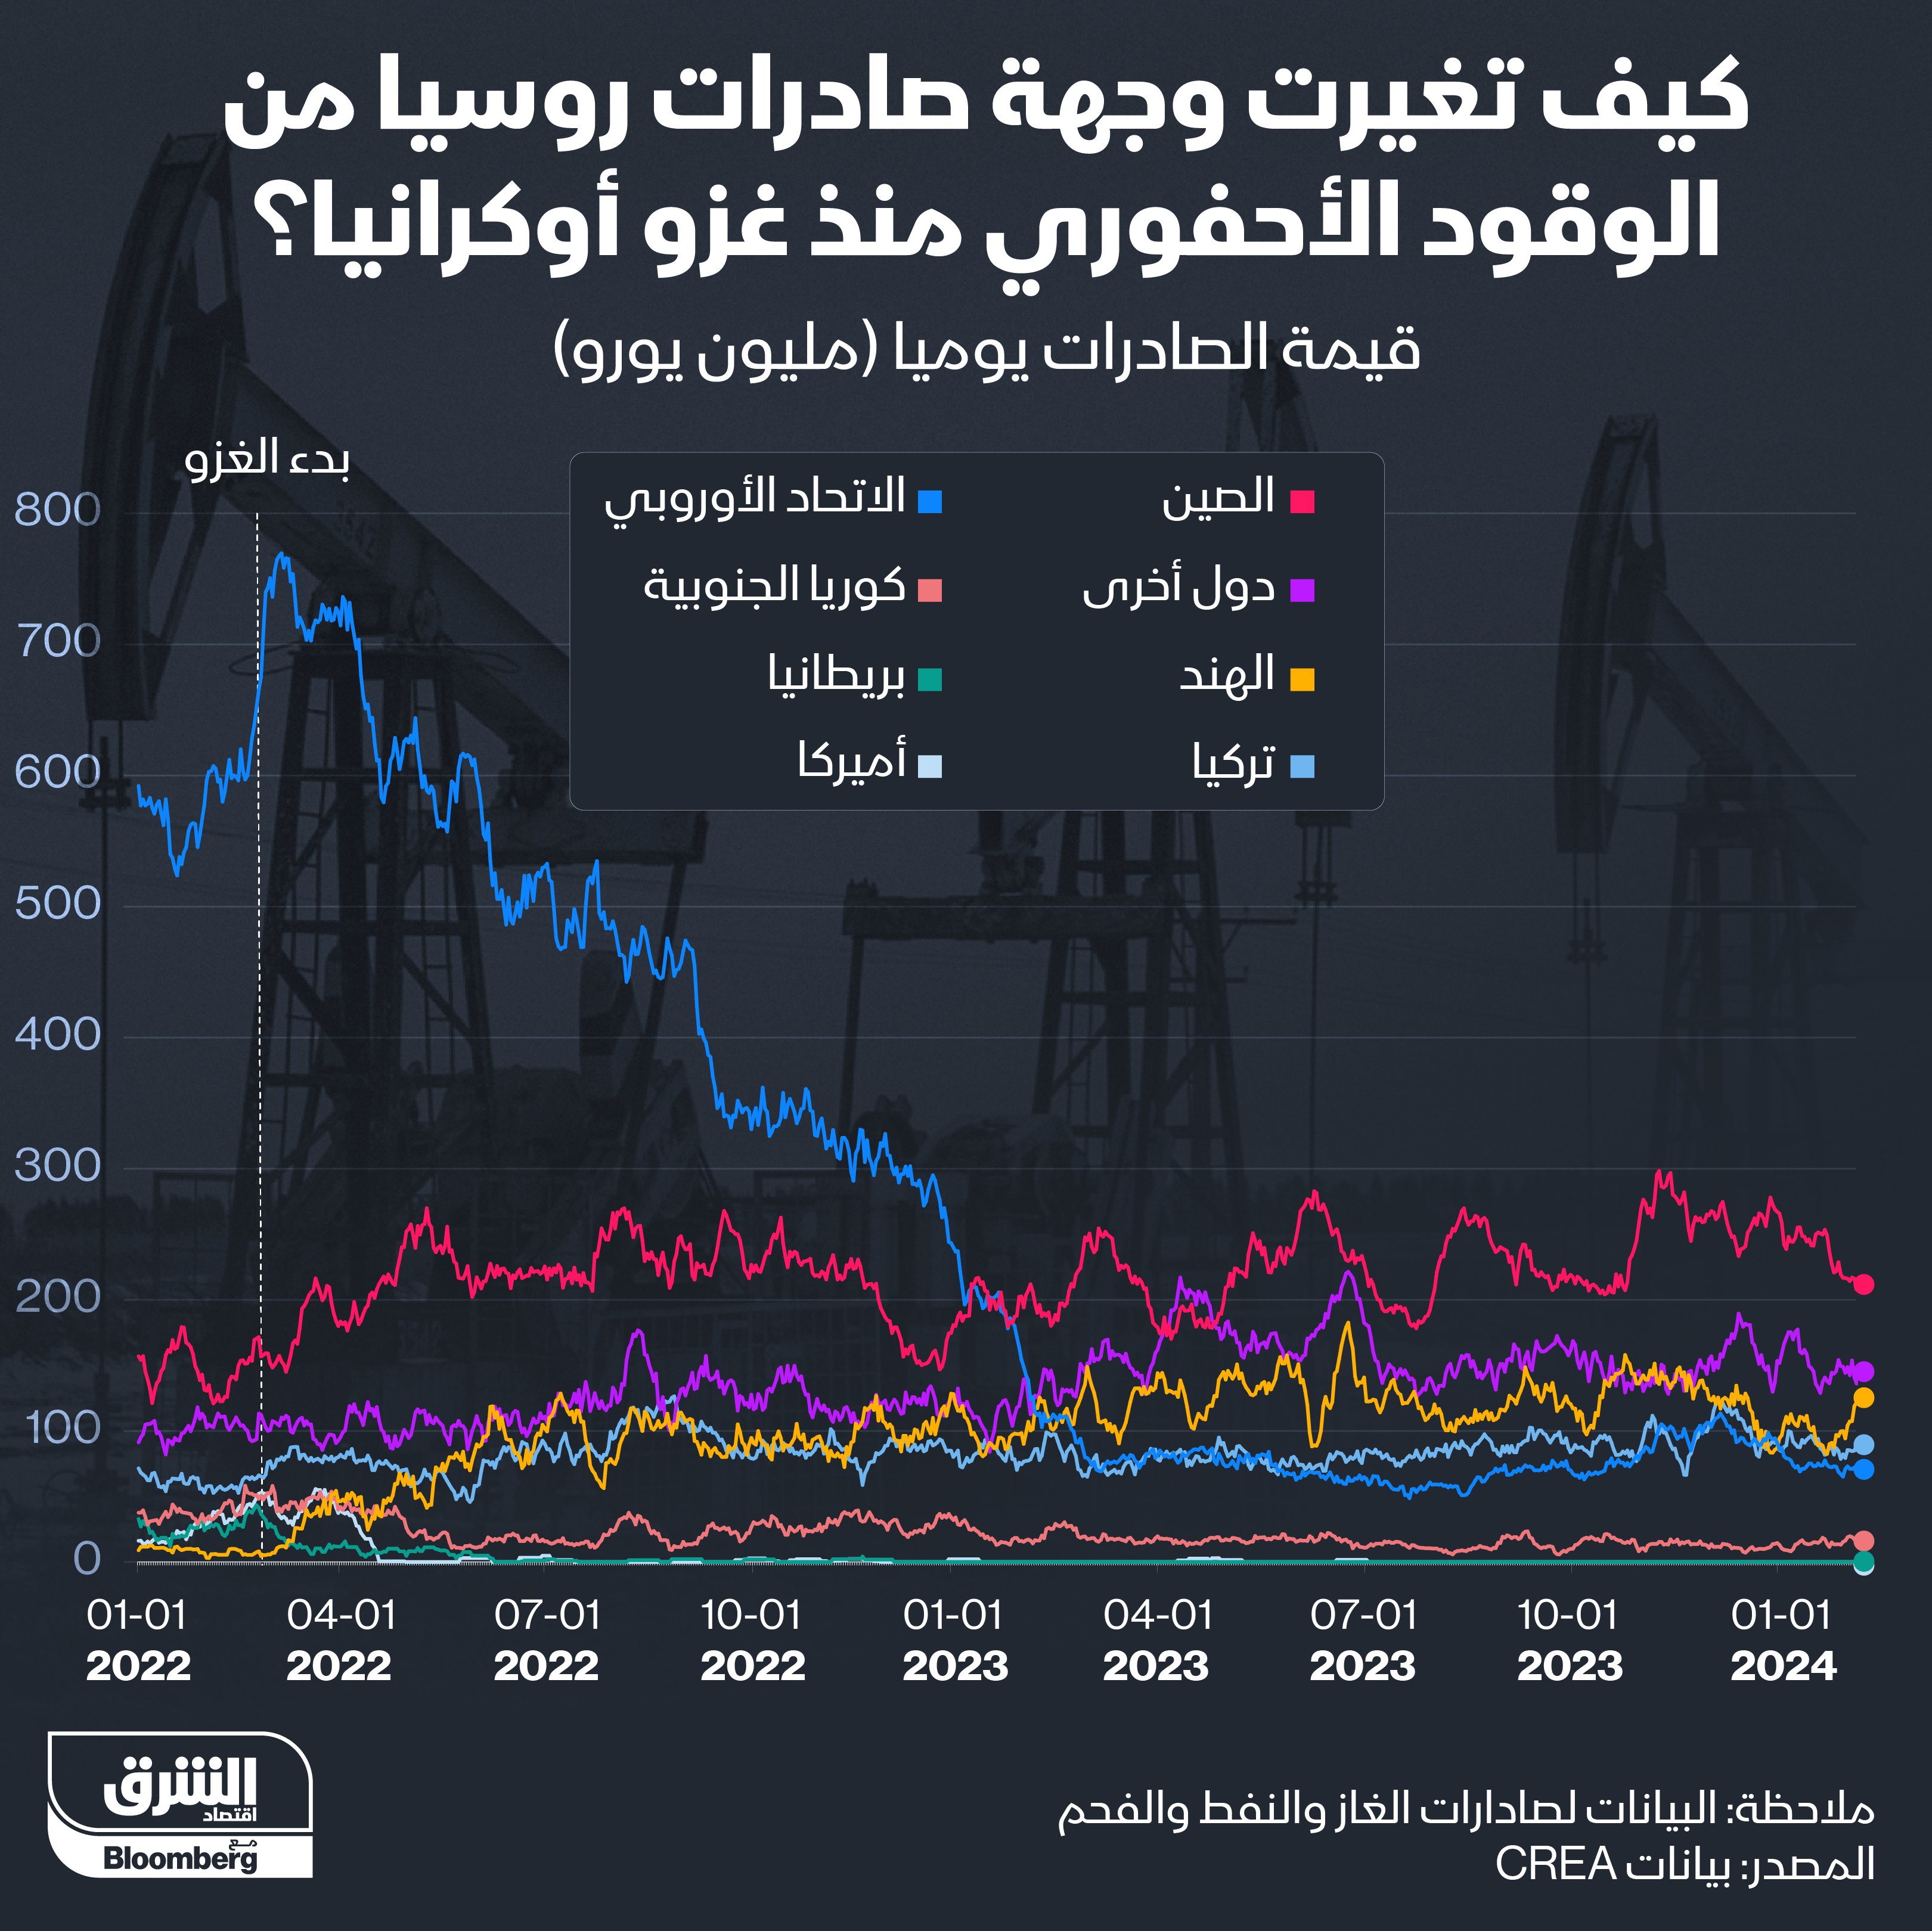 وجهة تصدير النفط الروسي تتغير بعد عامين على الحرب